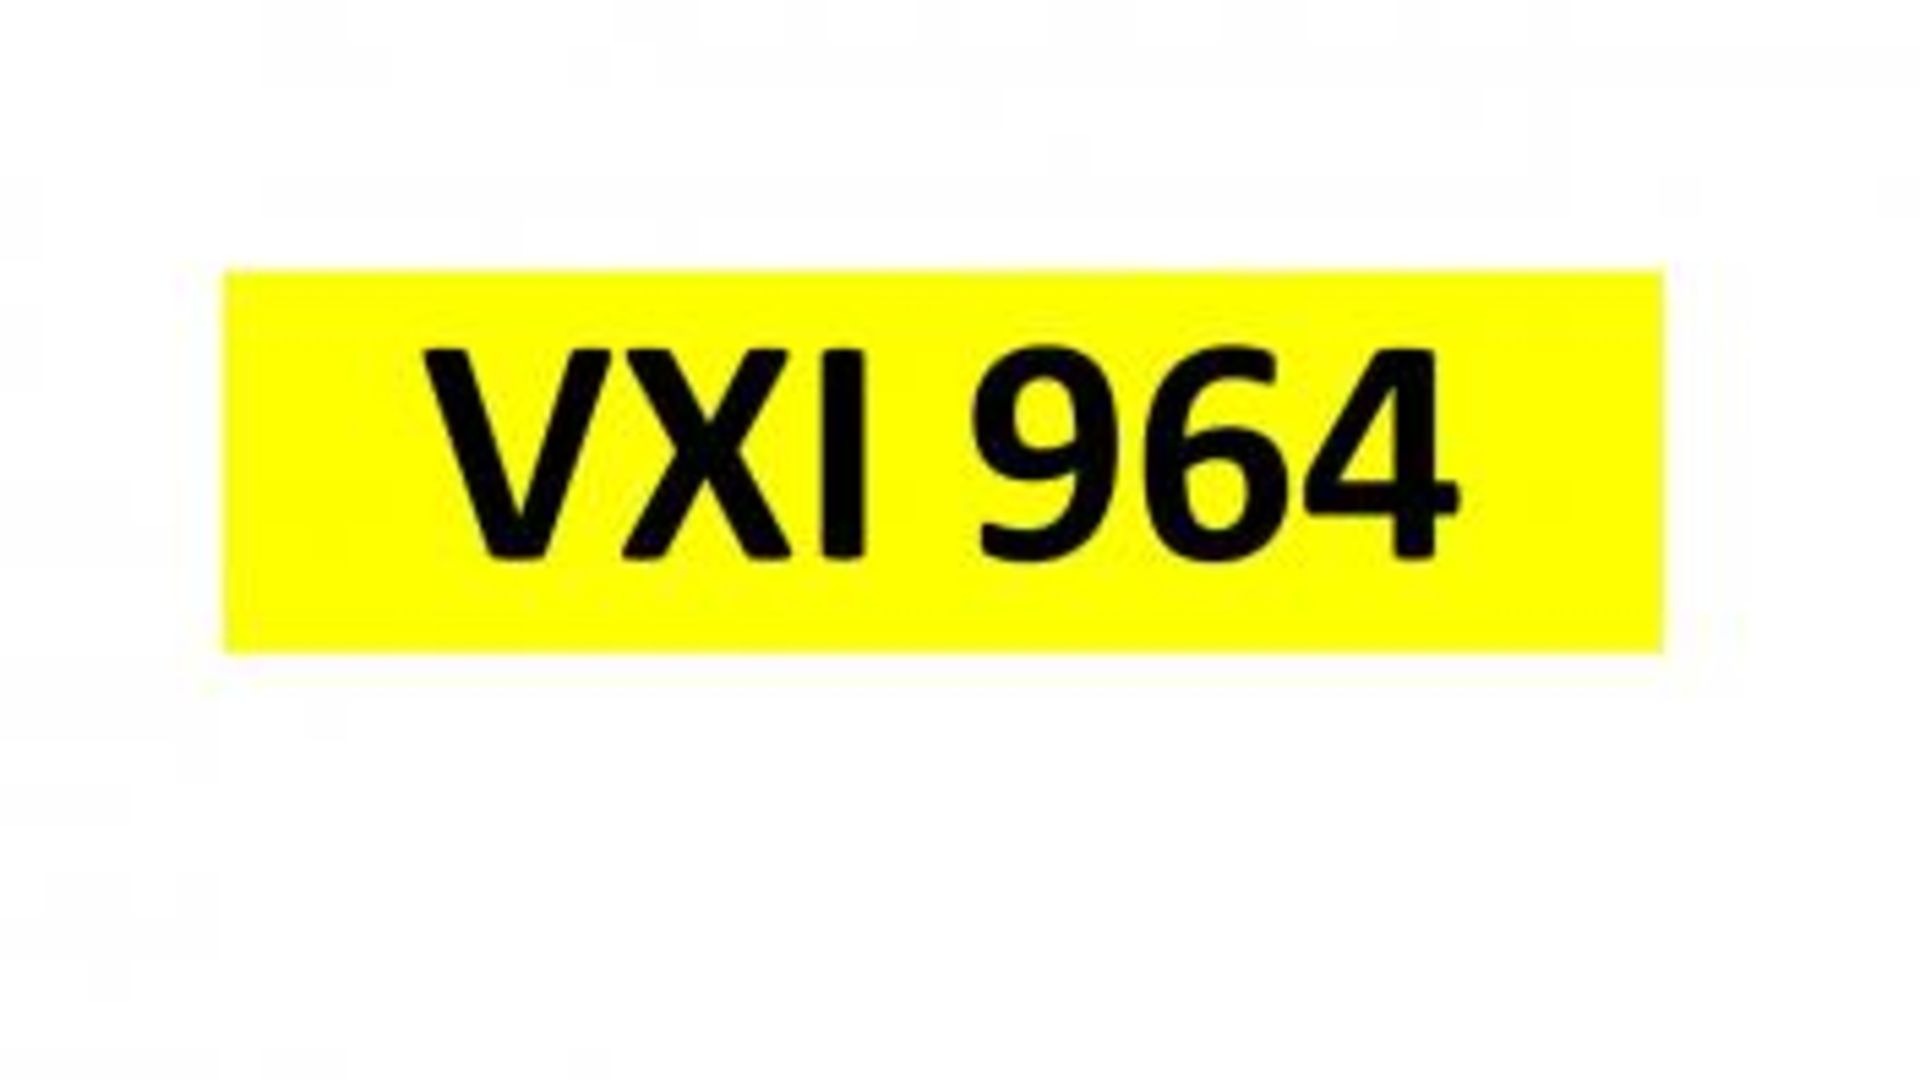 Registration - VXI 964